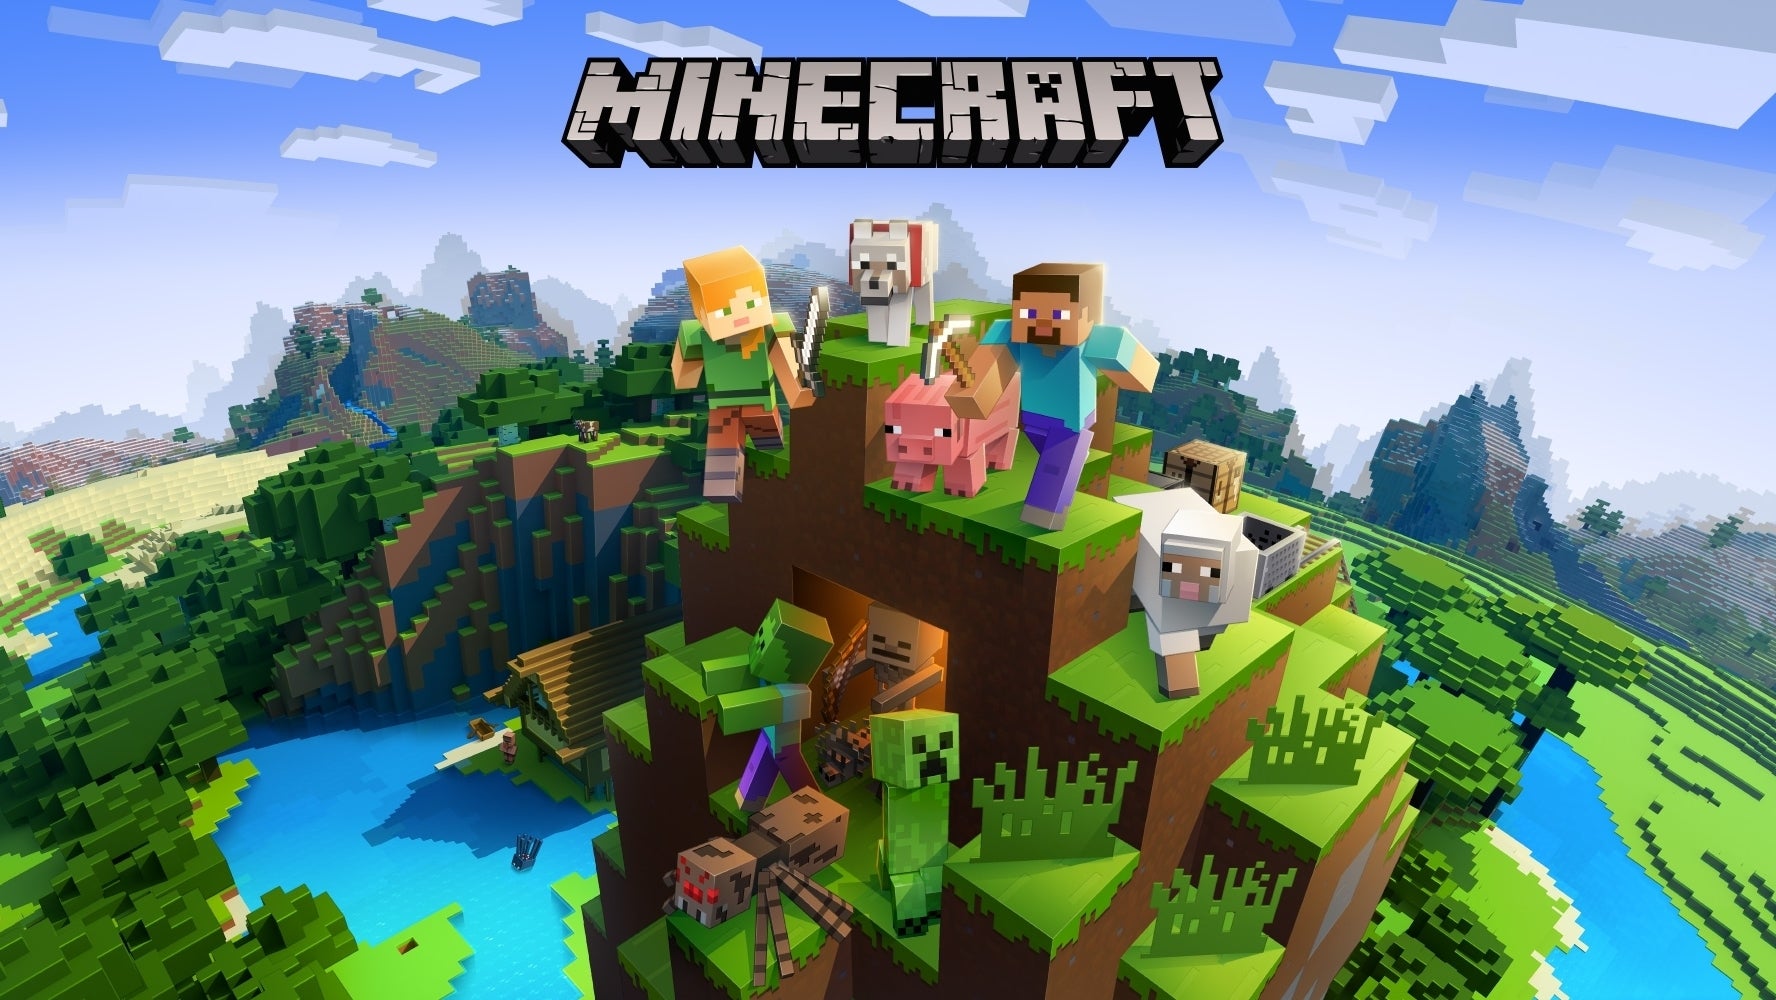 Immagine di Minecraft entra nella World Video Game Hall of Fame insieme ad altri nomi storici